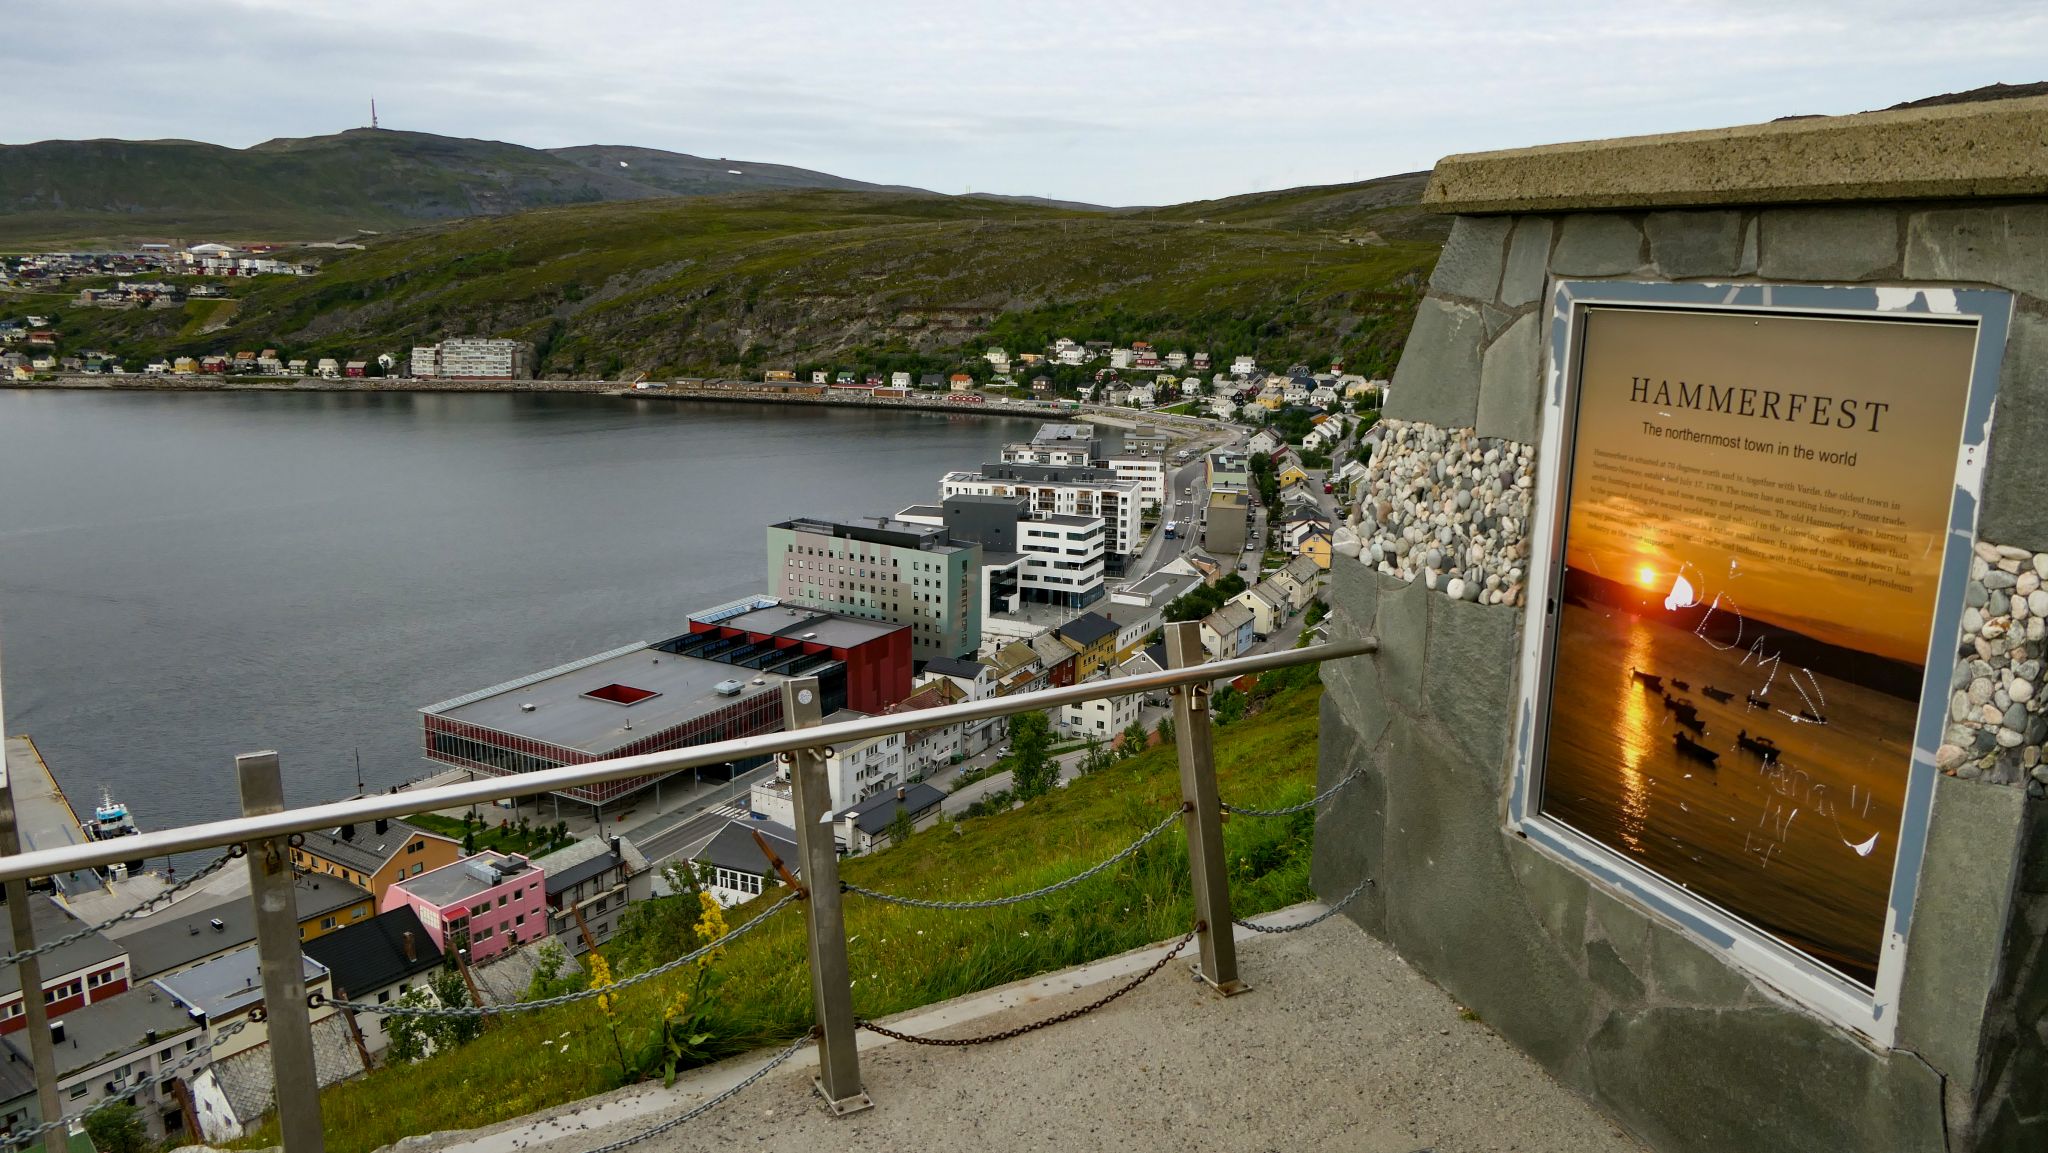 Das moderne Hammerfest. Sogar auf diesem Schild wird behauptet, es sei die nördlichste Stadt der Welt.